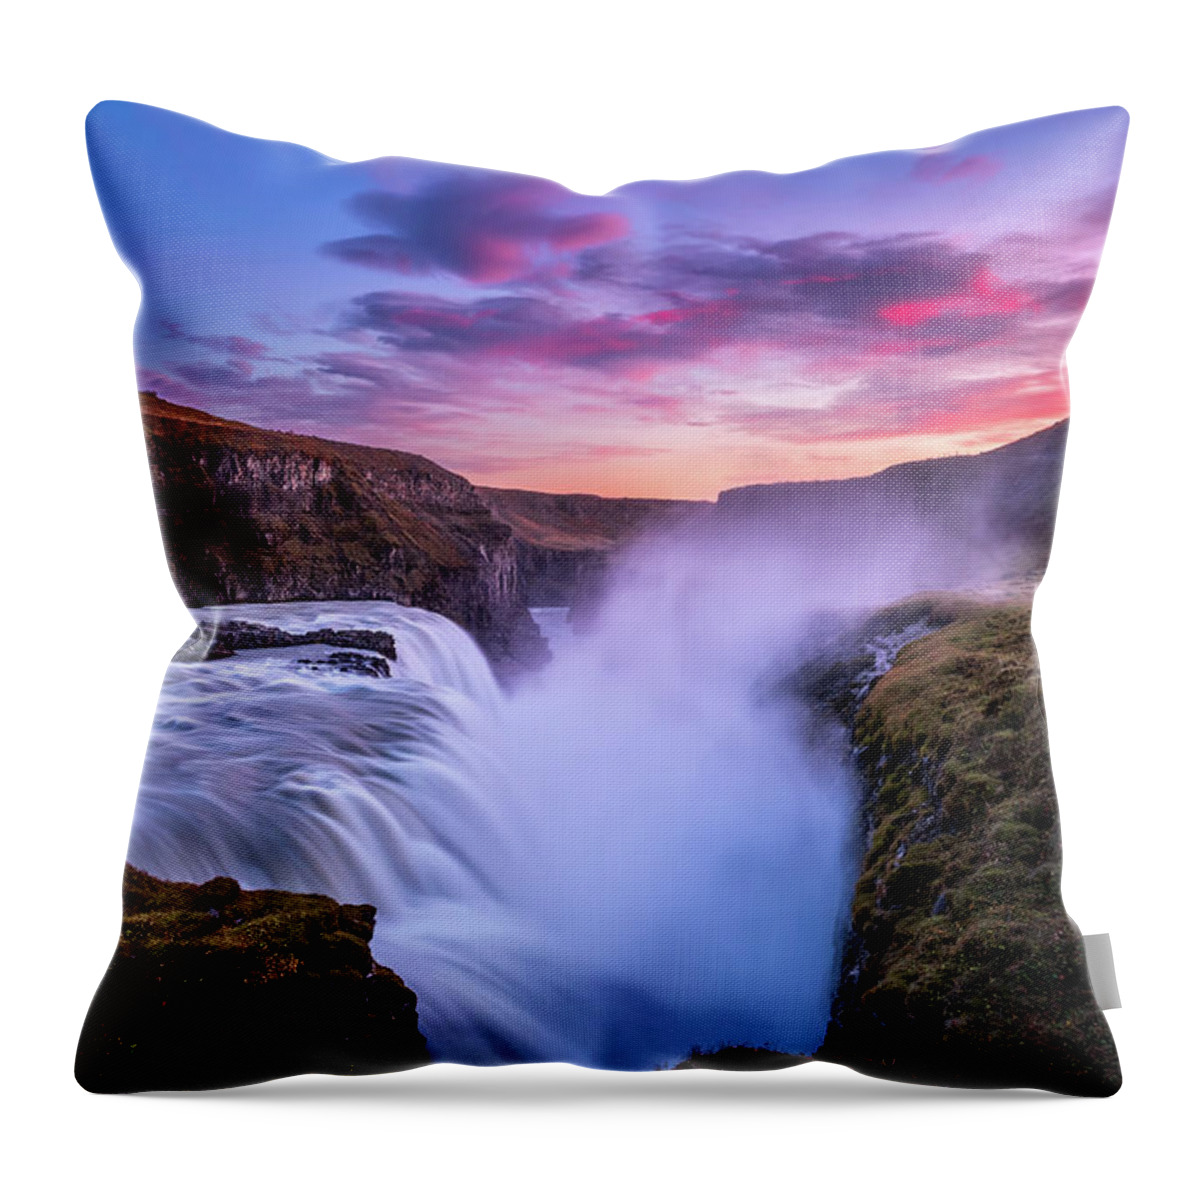 Gullfoss Throw Pillow featuring the photograph Sunset at Gullfoss by Alexios Ntounas